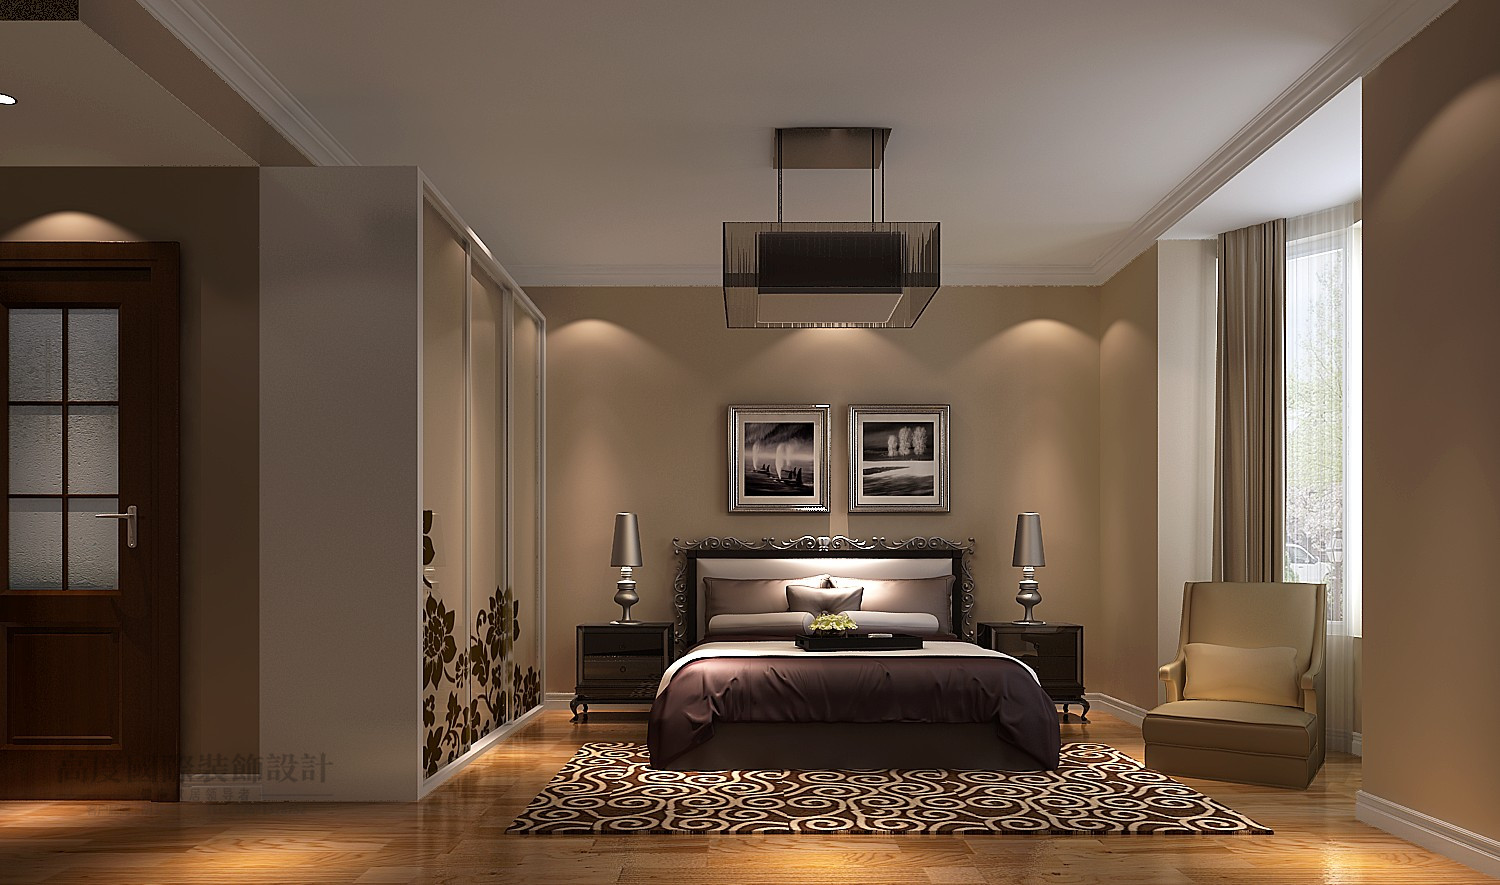 简约 公寓 效果图 设计案例 卧室图片来自高度国际设计装饰在大宁山庄简约风格设计案例的分享